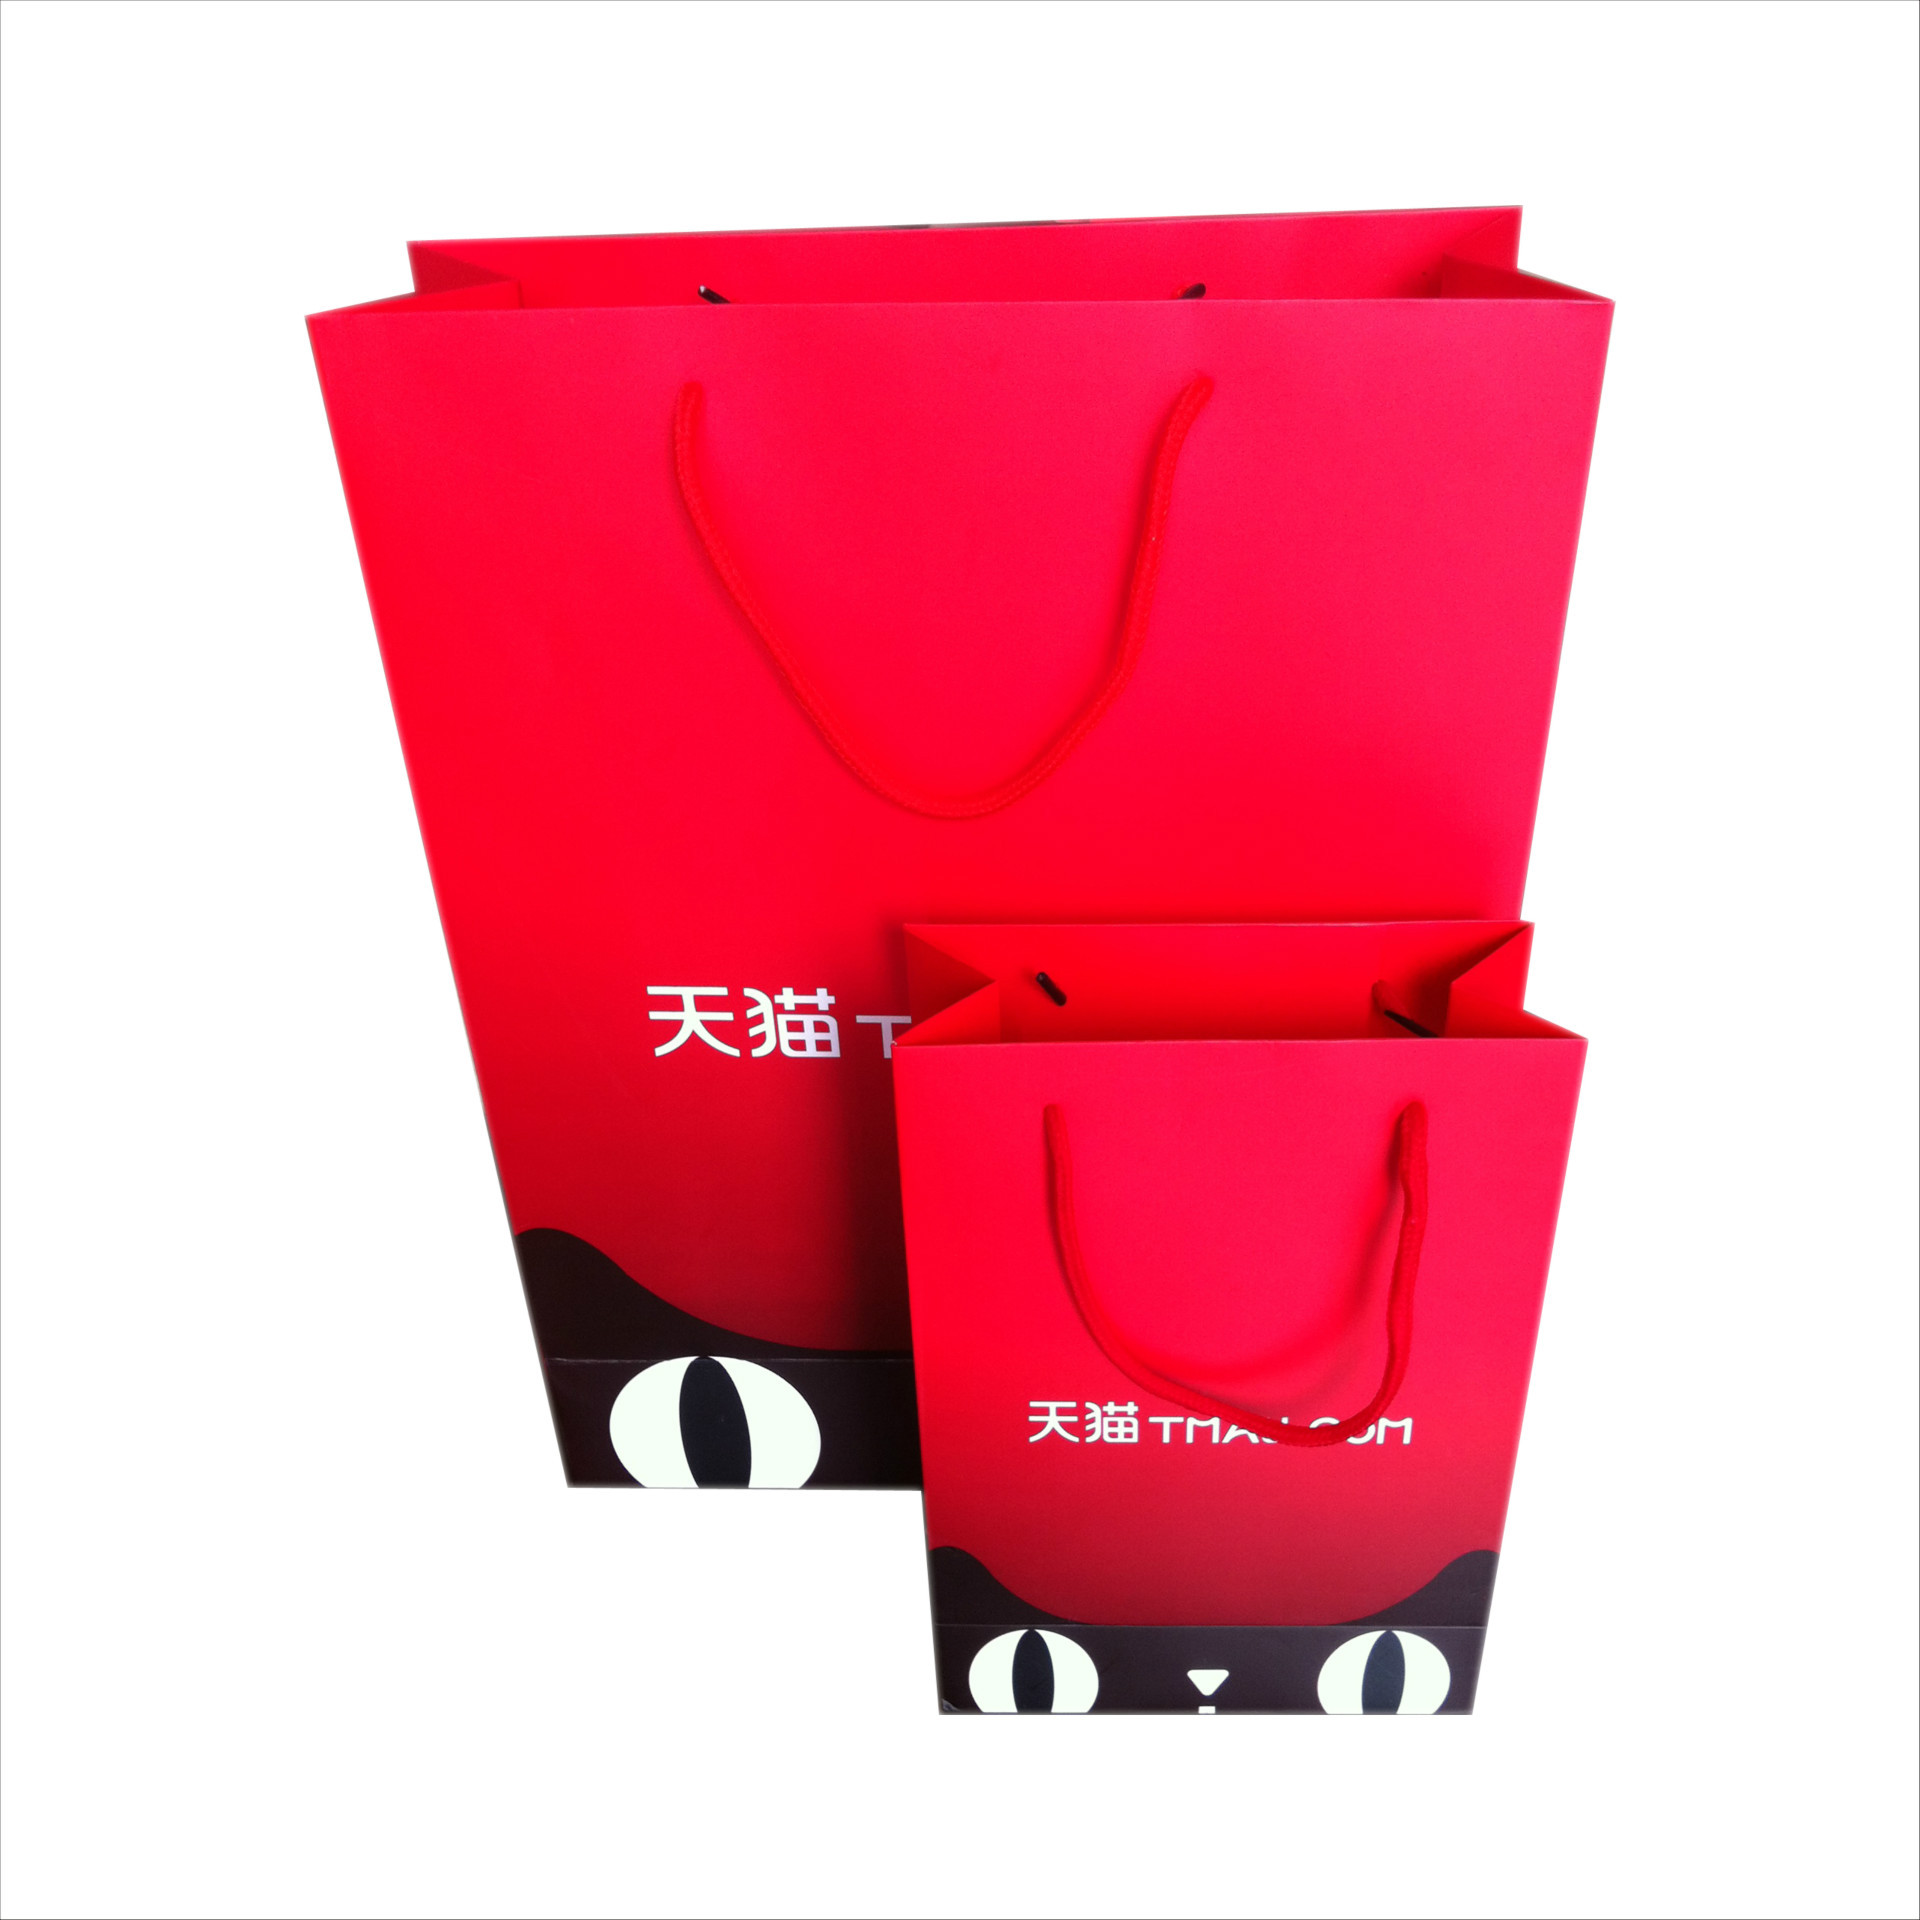 新款天猫通用纸袋 230g白卡加厚纸袋 江苏苏州